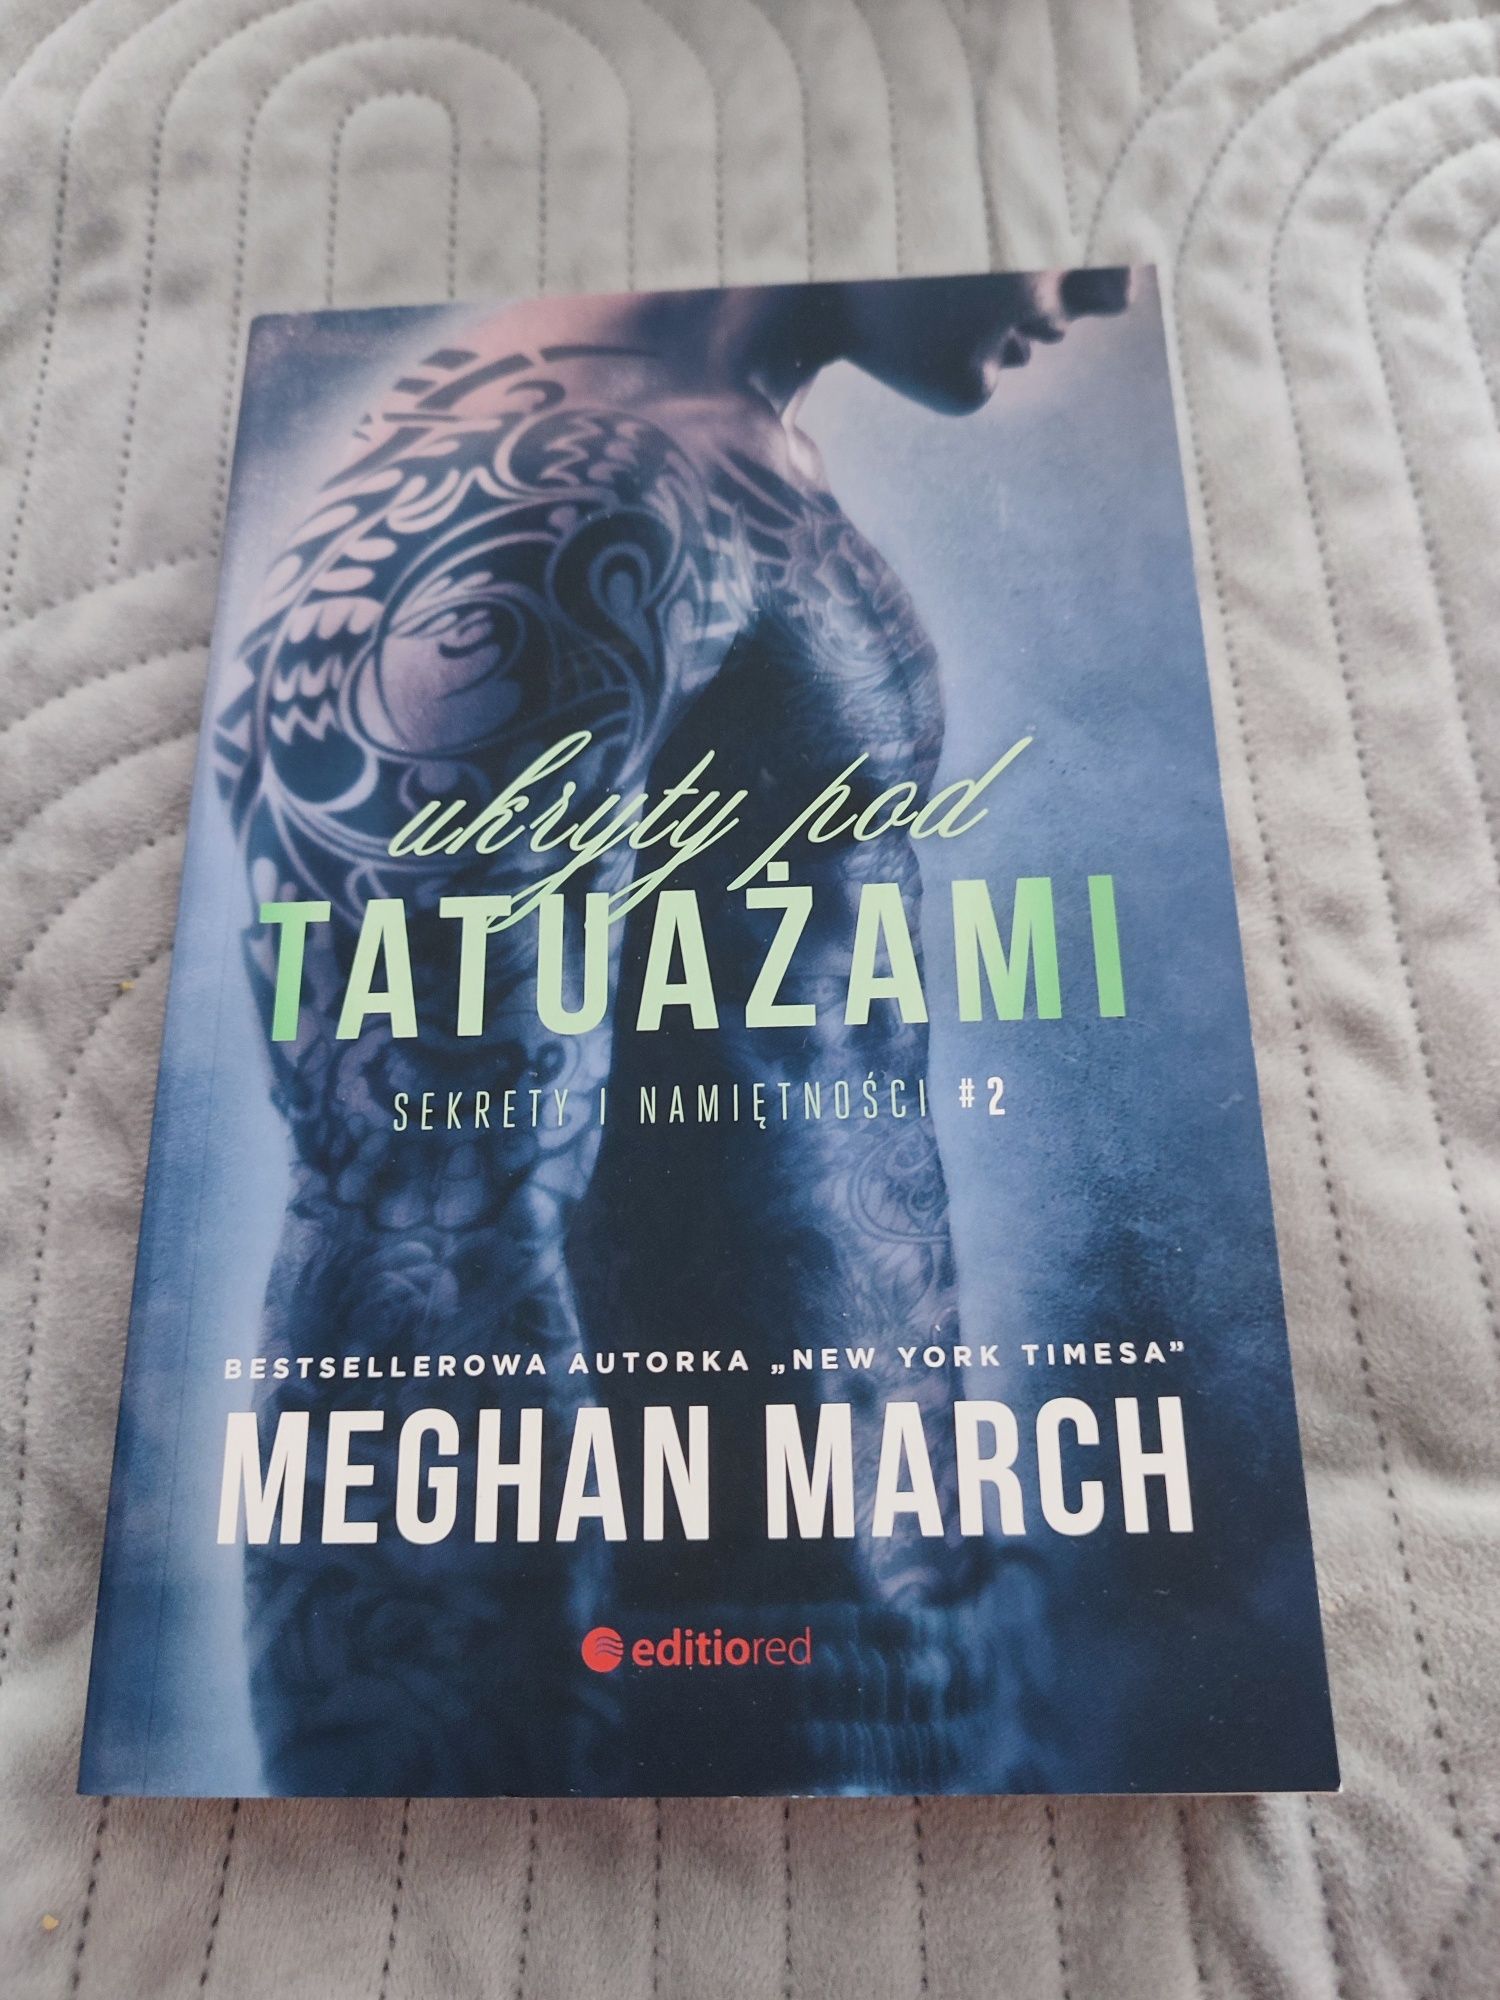 Meghan March - "ukryty pod tatuażami "-(cz:2)